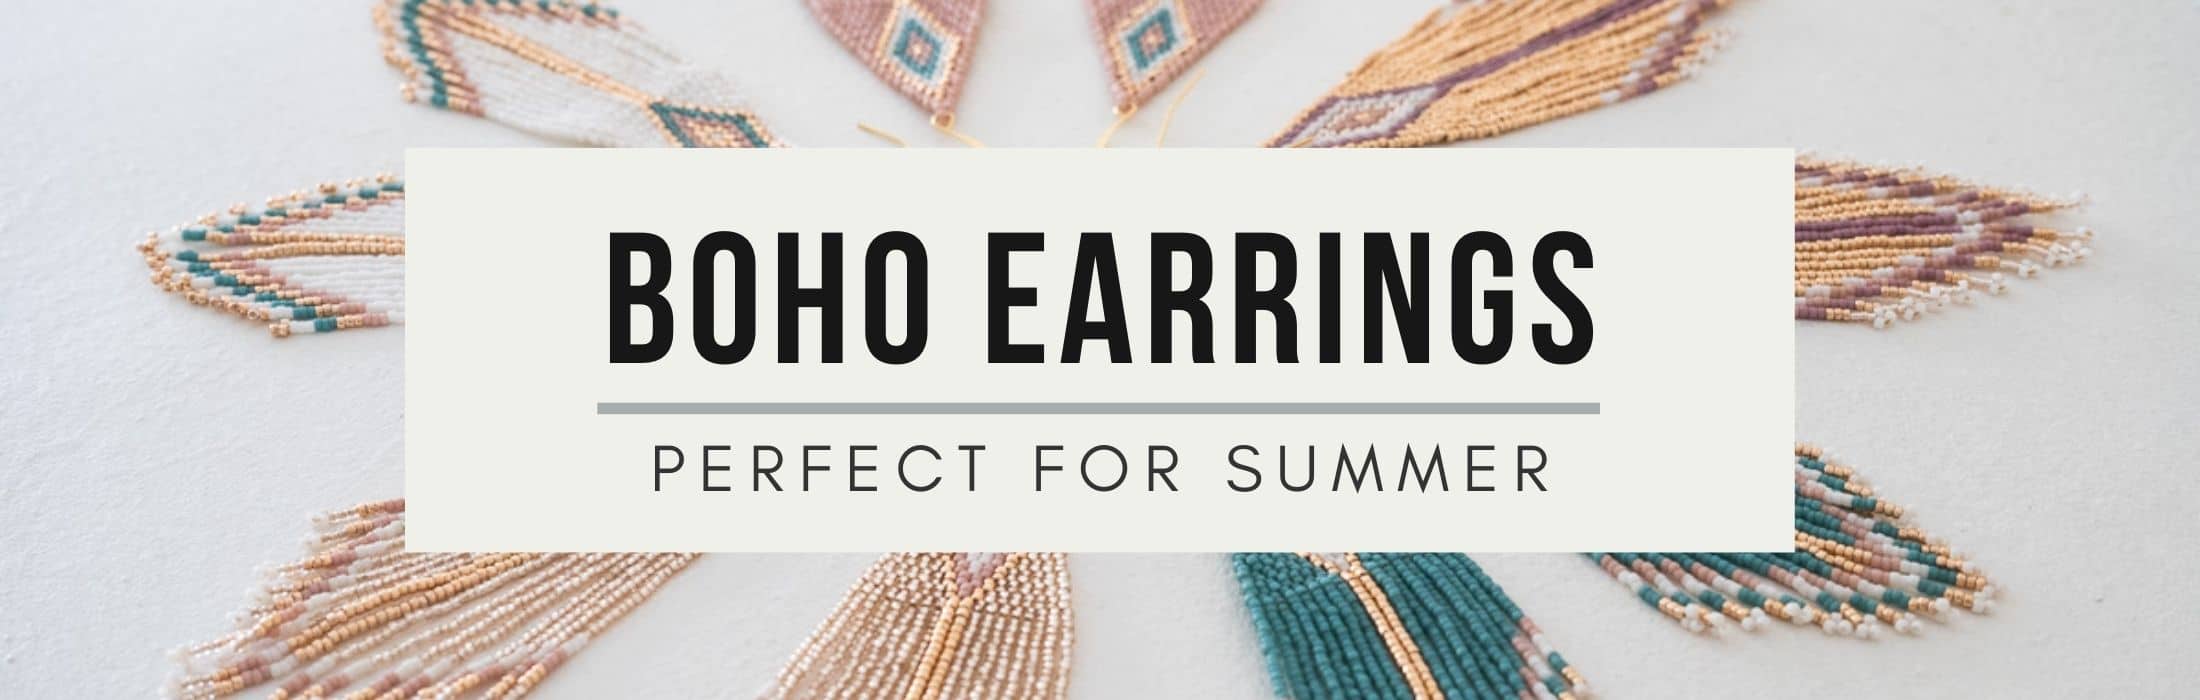 boho earrings summer